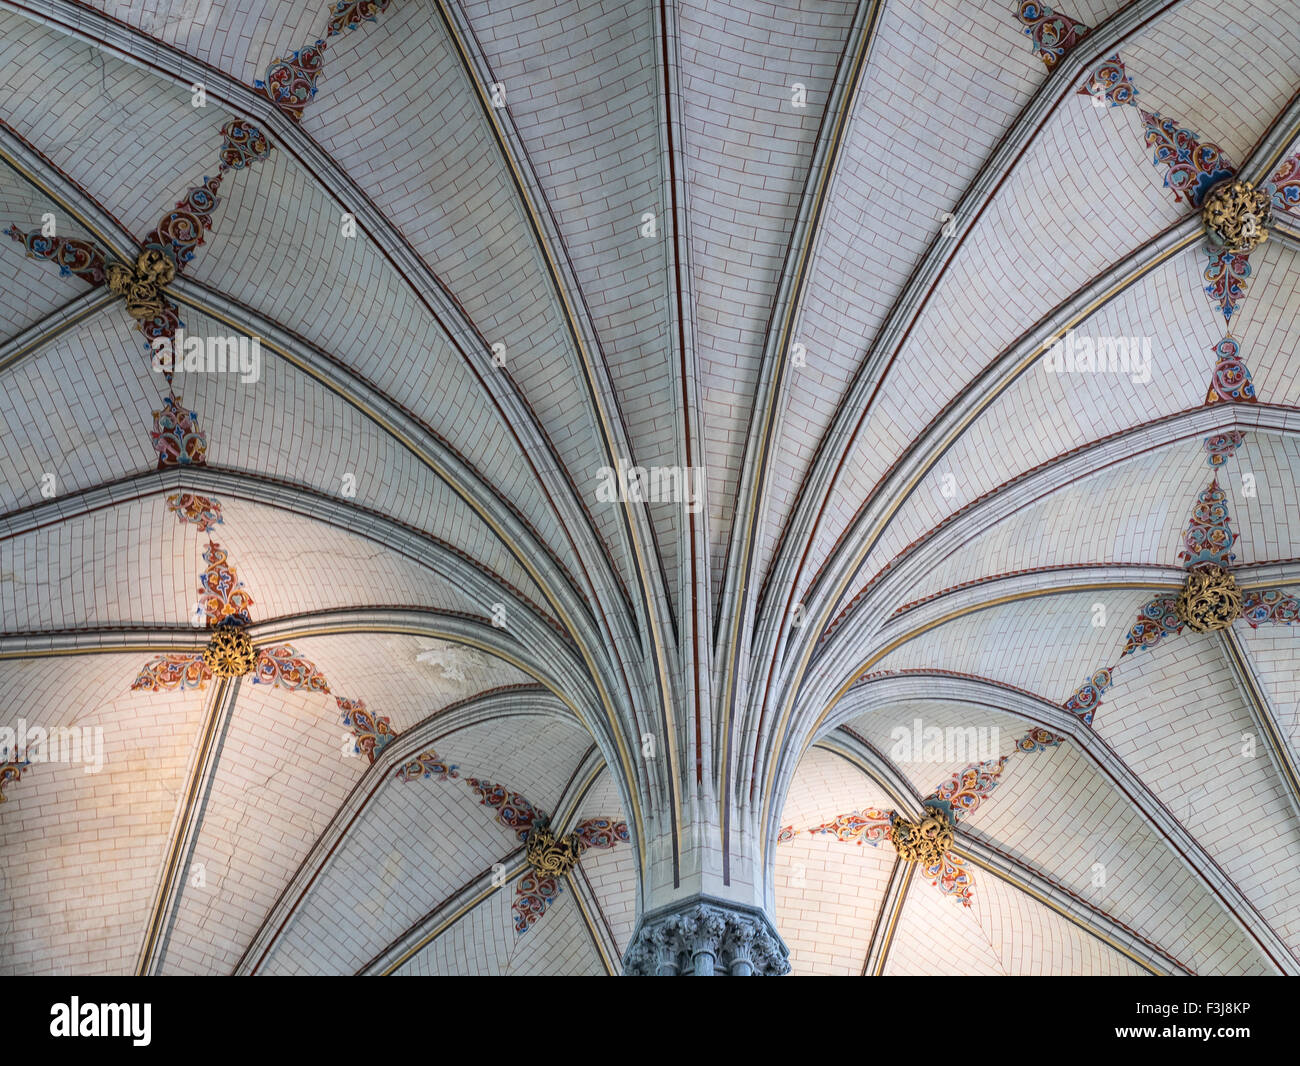 Voûte du ventilateur dans la salle capitulaire de la cathédrale de Salisbury, une cité médiévale de style gothique du xiiie siècle lieu de culte chrétien. Banque D'Images